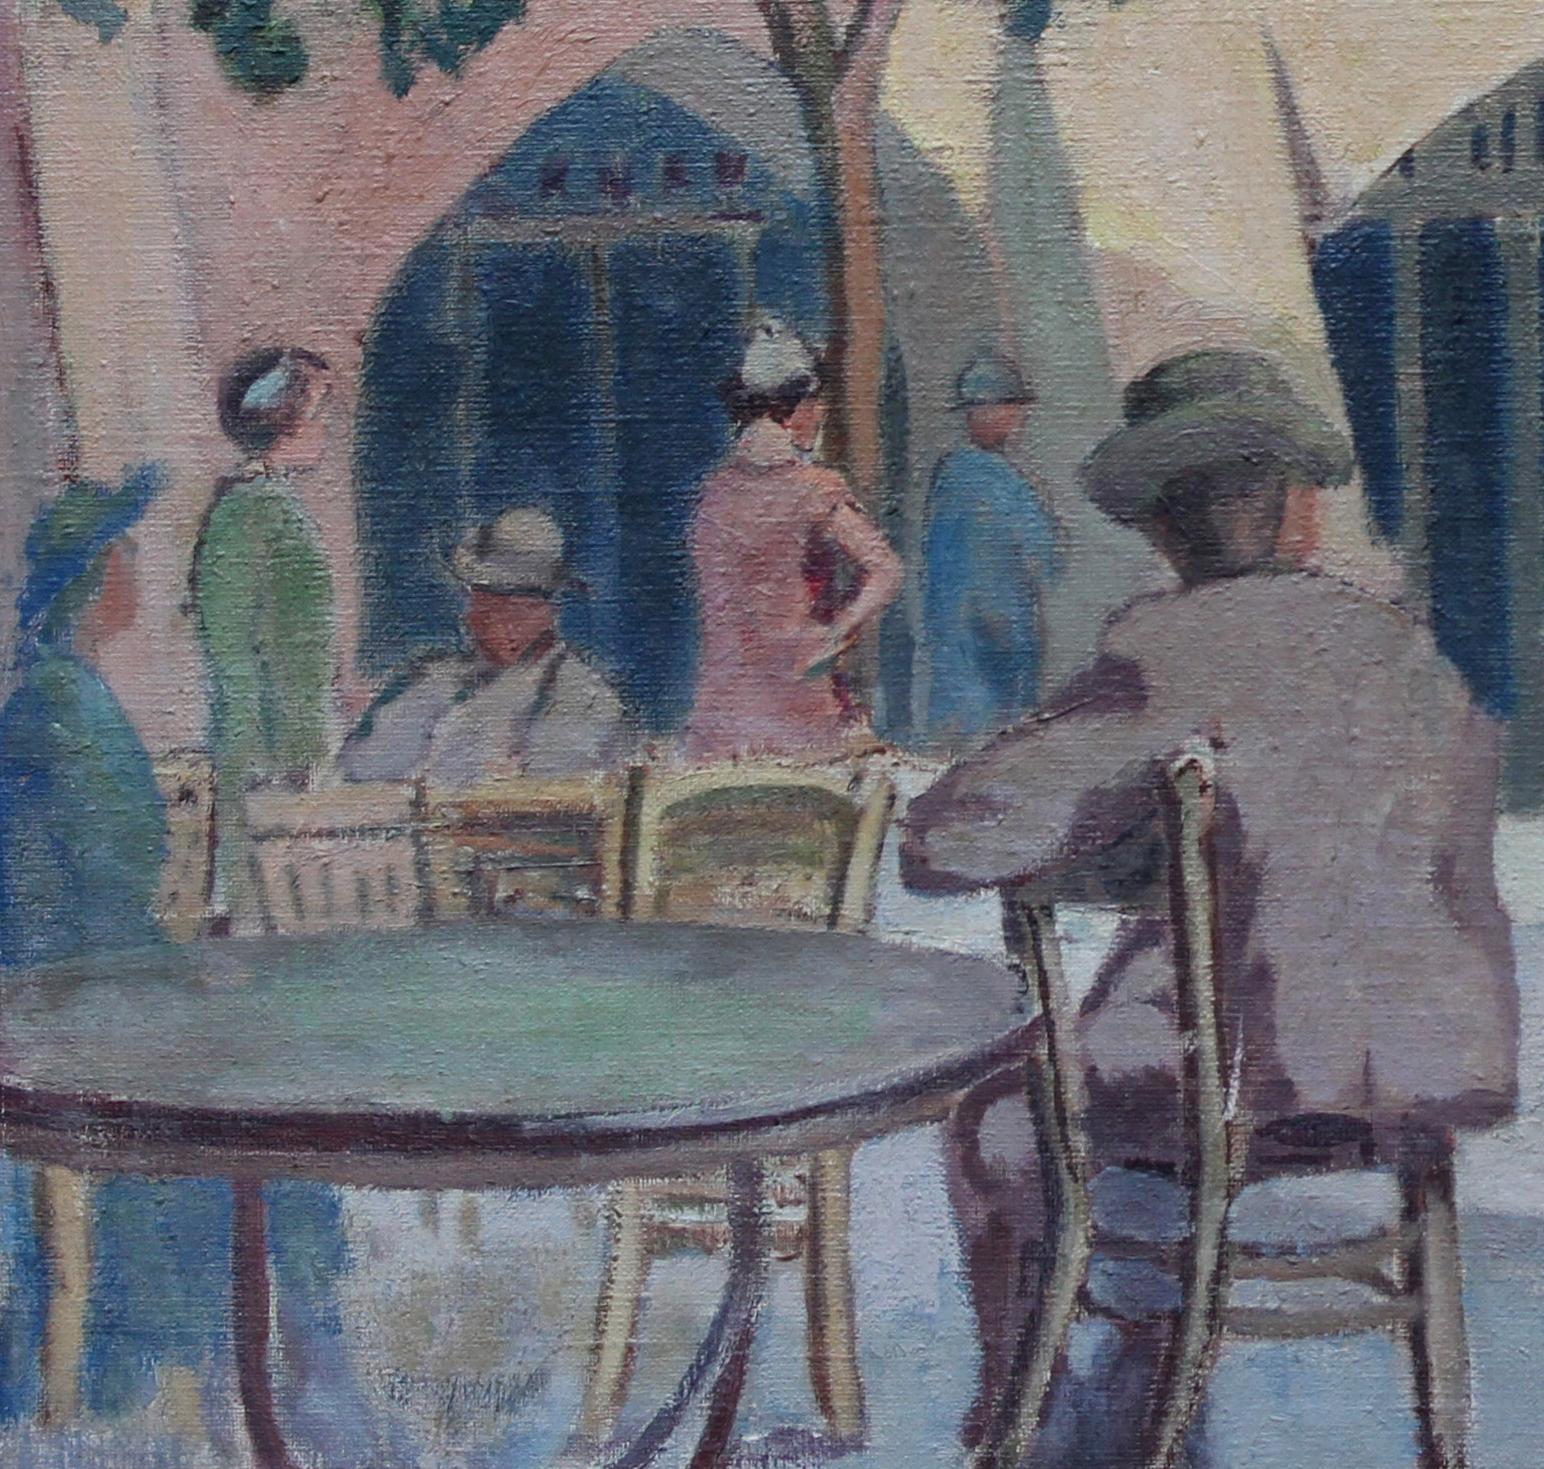 Ein hervorragendes postimpressionistisches Werk des britischen Künstlers Forrest Hewit in Öl auf Leinwand. Dieses lebendige Werk zeigt eine Café-Szene im Freien unter Bäumen, mit einem Dutzend Figuren, die an Tischen sitzen oder stehen. Sie stammt